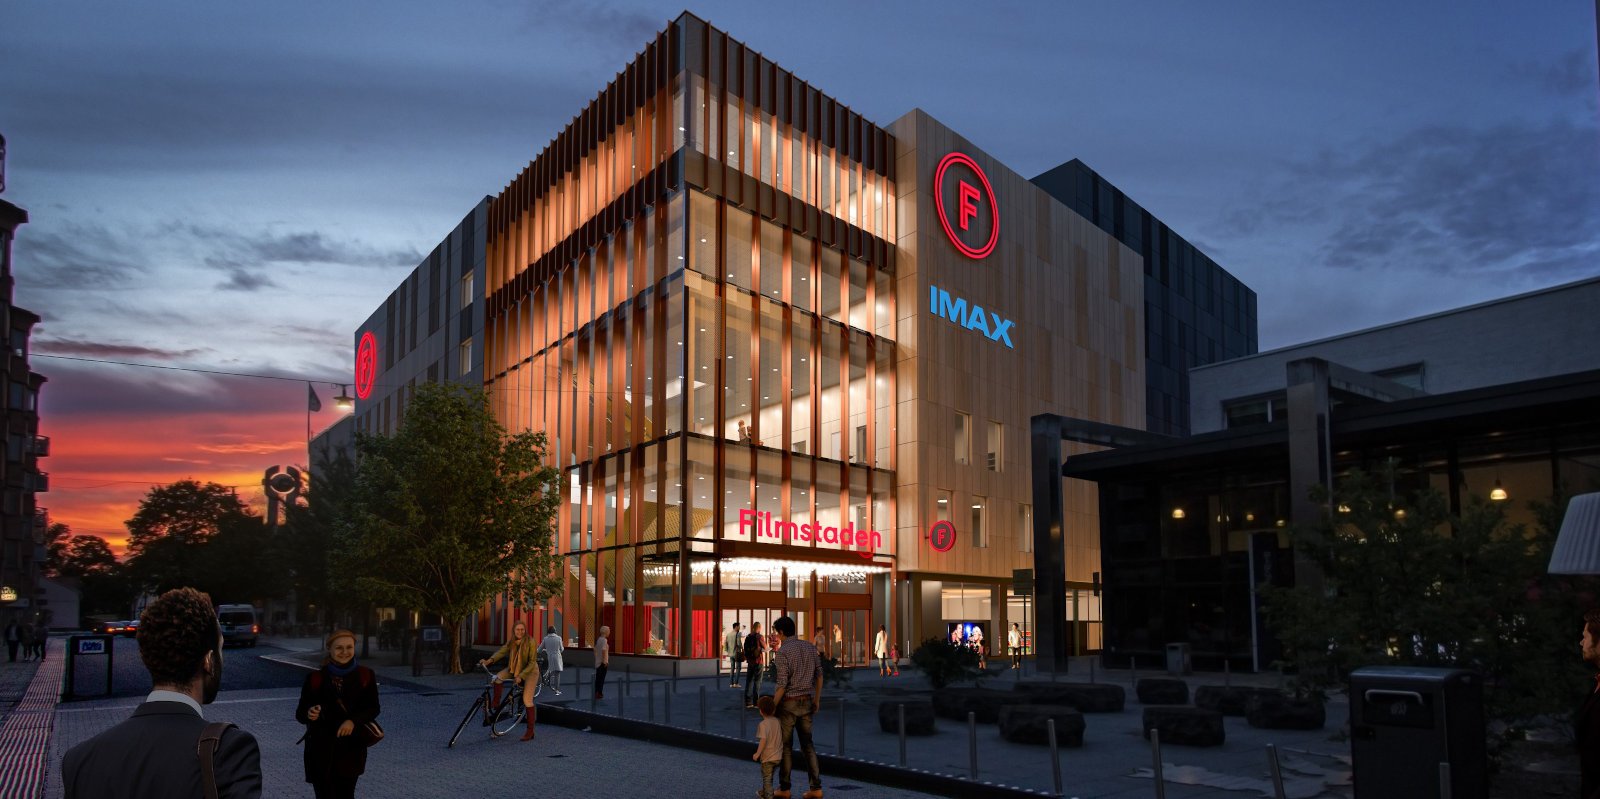 Filmstaden storsatsar i Uppsala – ny biograf och IMAX®-salong på gång. Foto: Filmstaden.